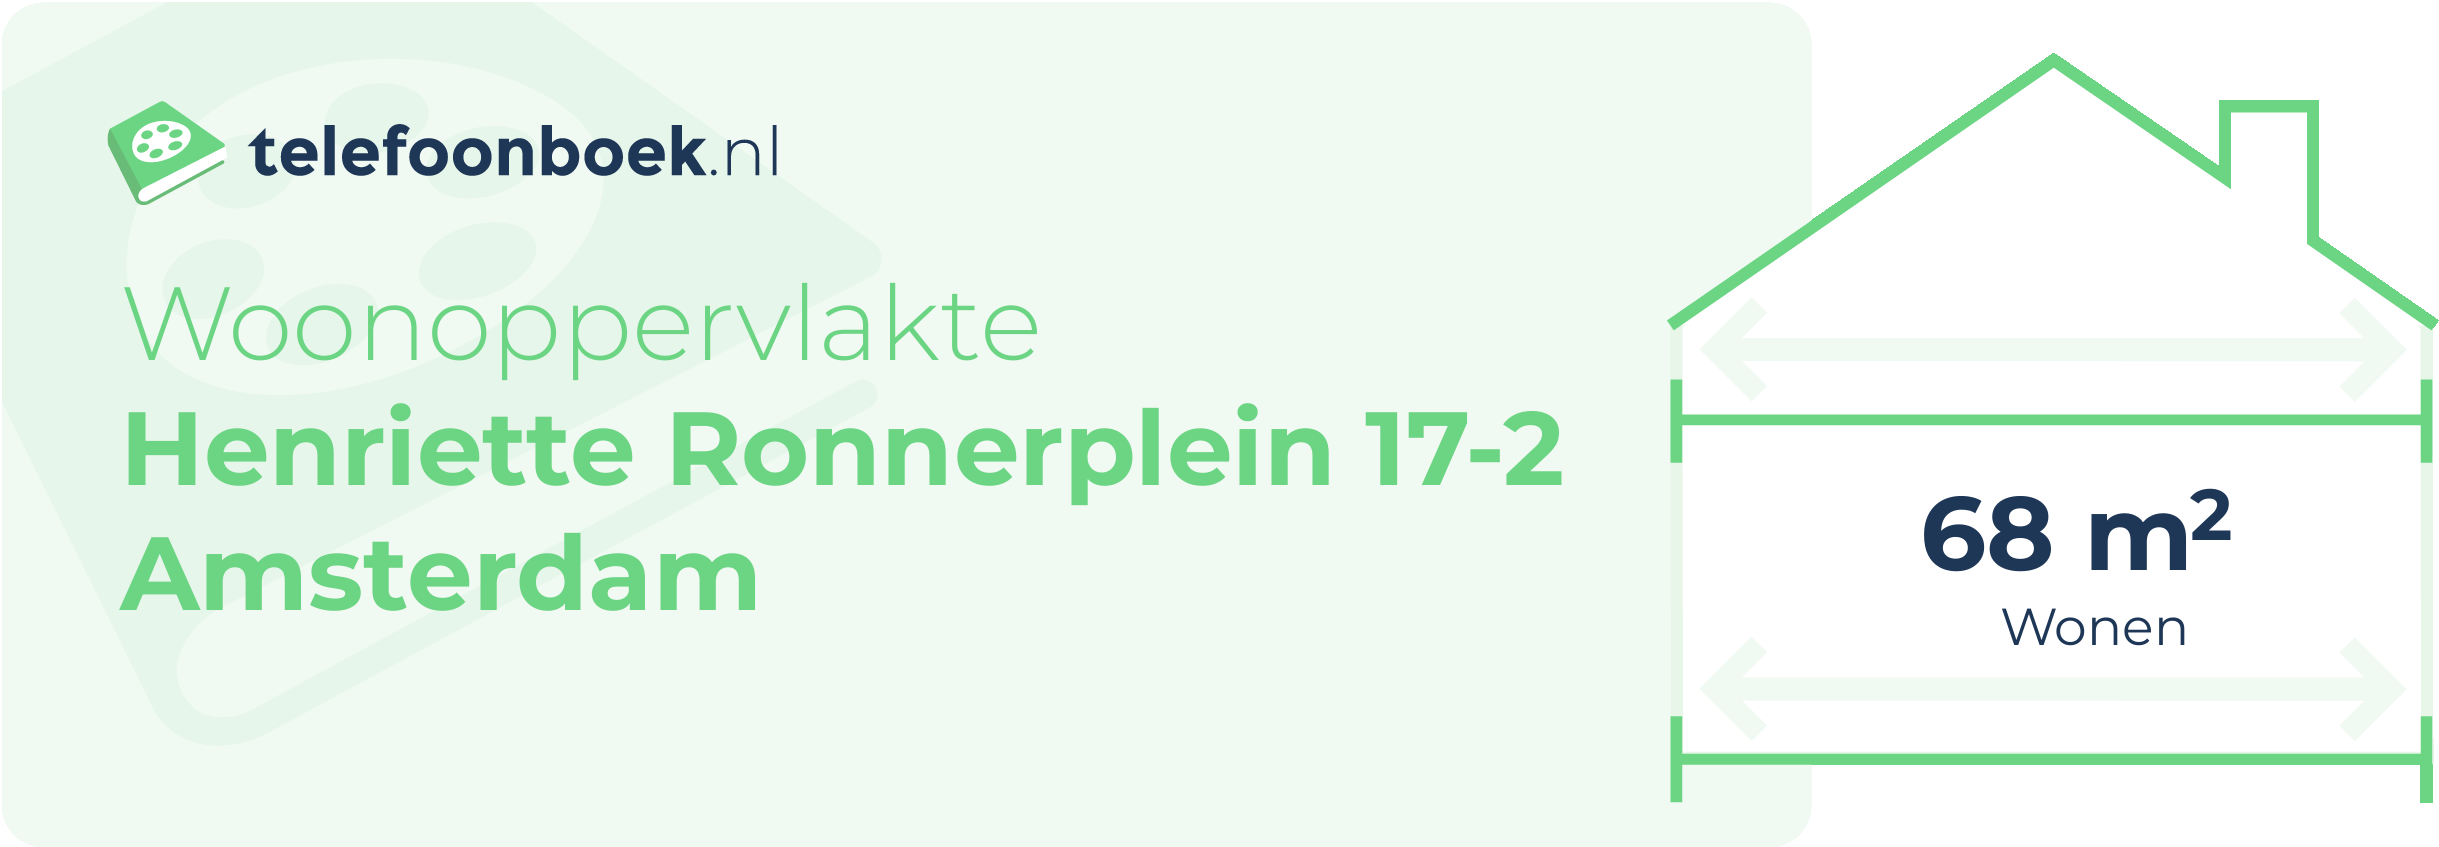 Woonoppervlakte Henriette Ronnerplein 17-2 Amsterdam